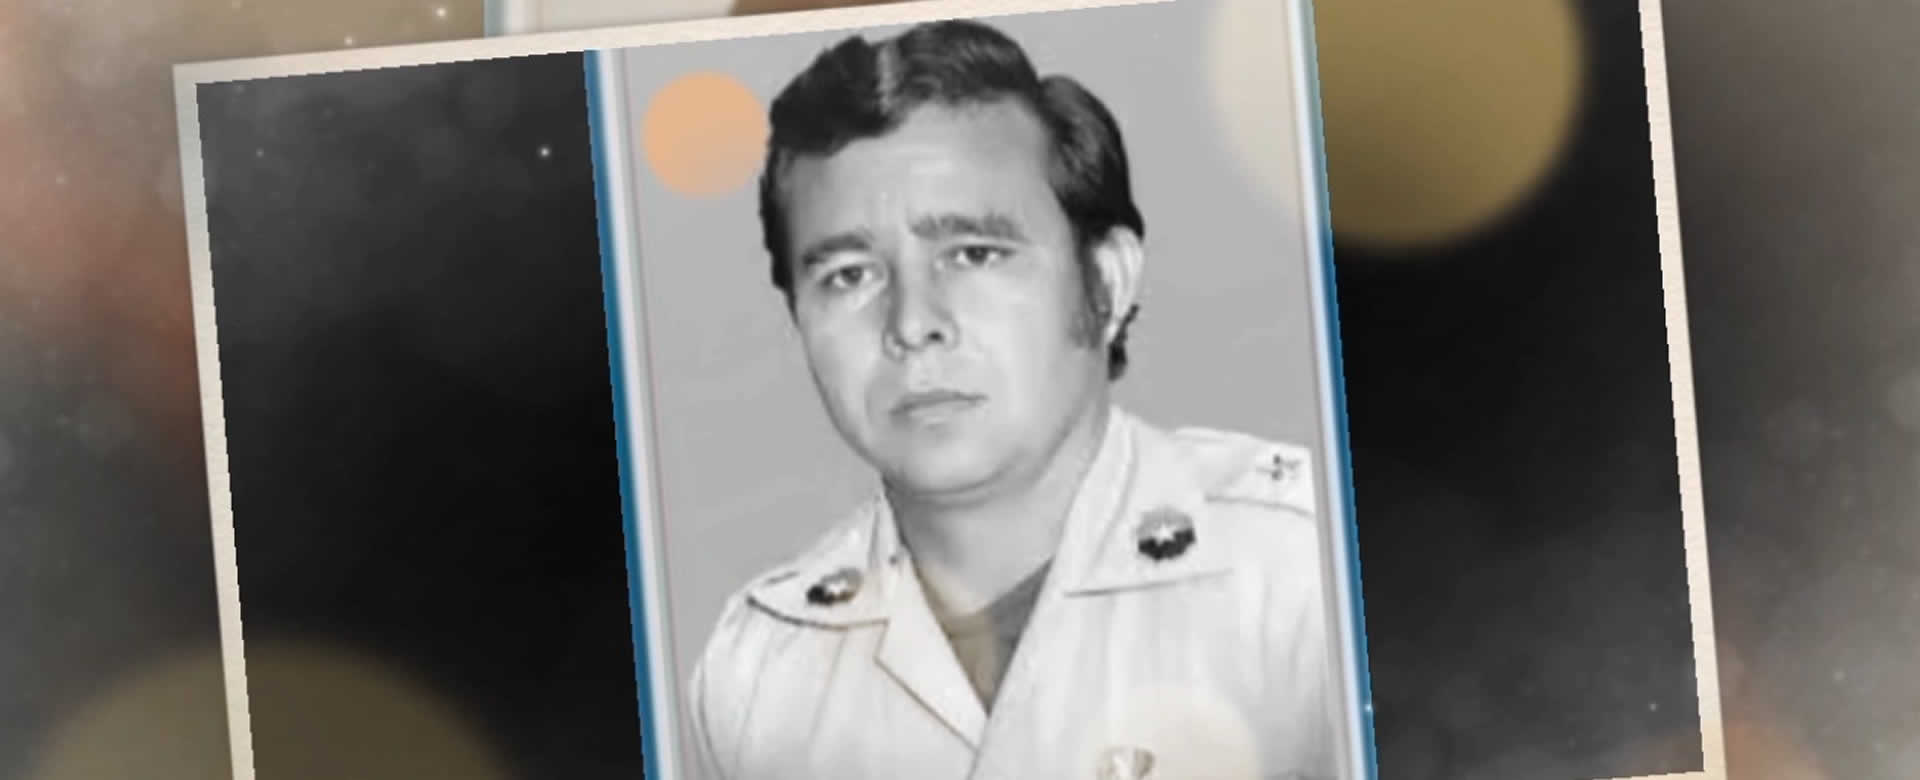 Polcía Nacional rinde homenaje al comandante Walter Ferretí